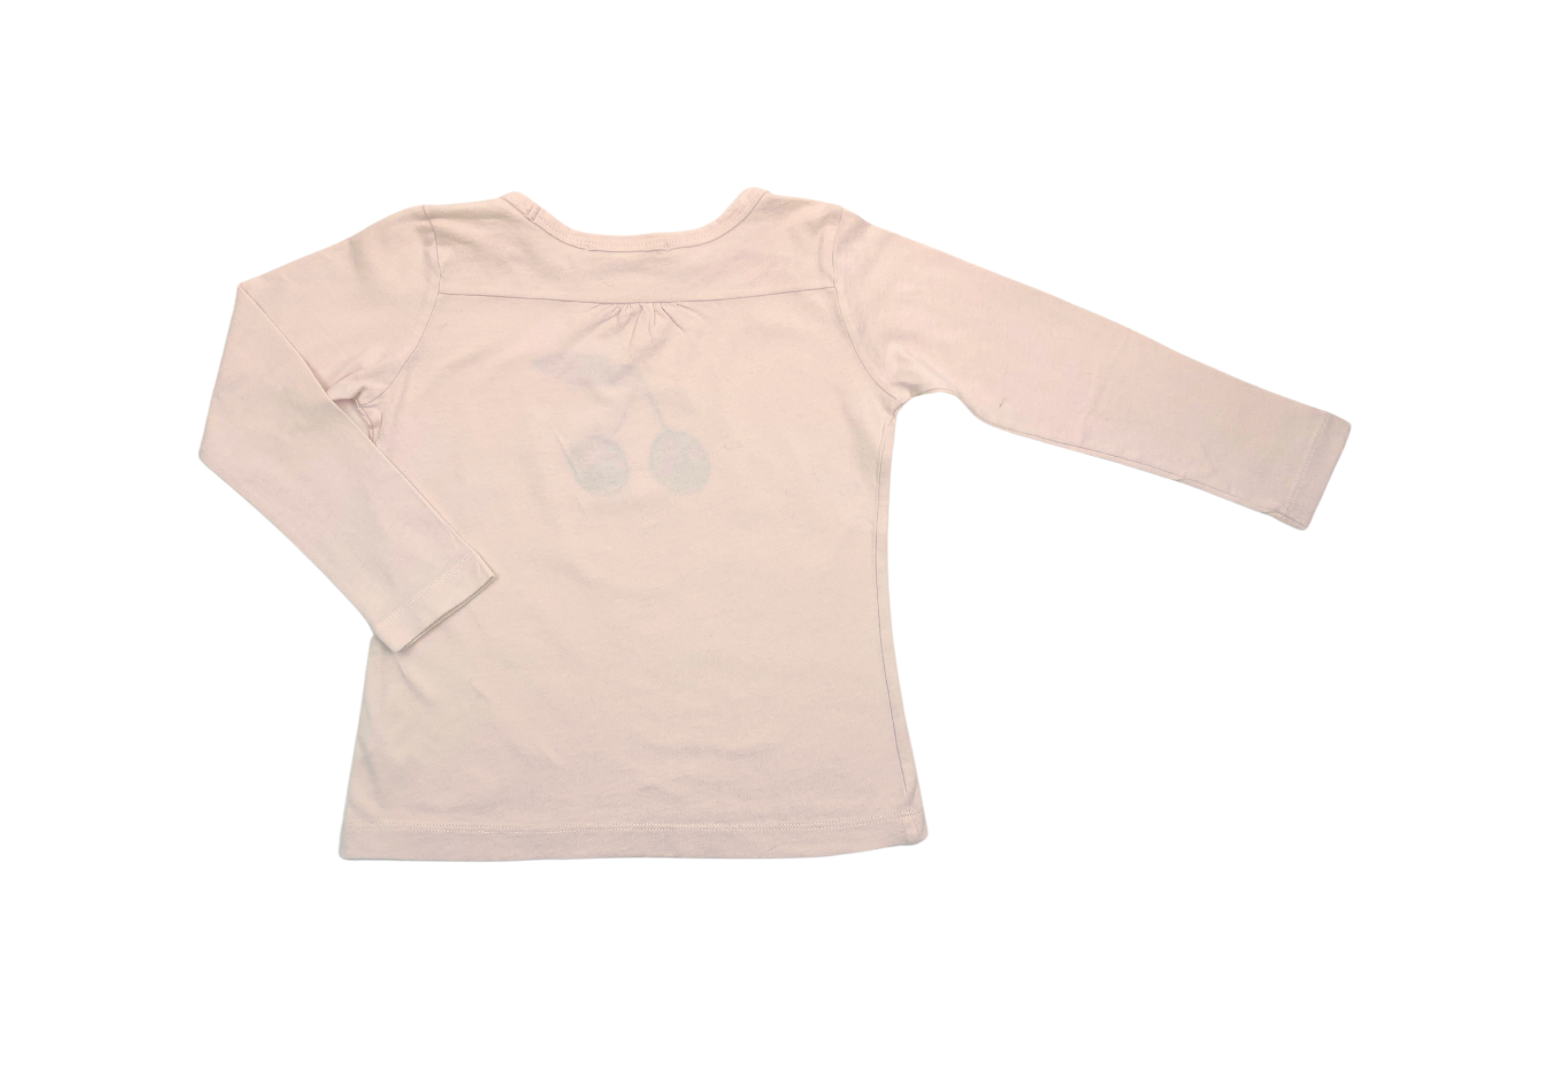 BONPOINT - T-shirt manches longues rose pâle motif cerise - 3 ans